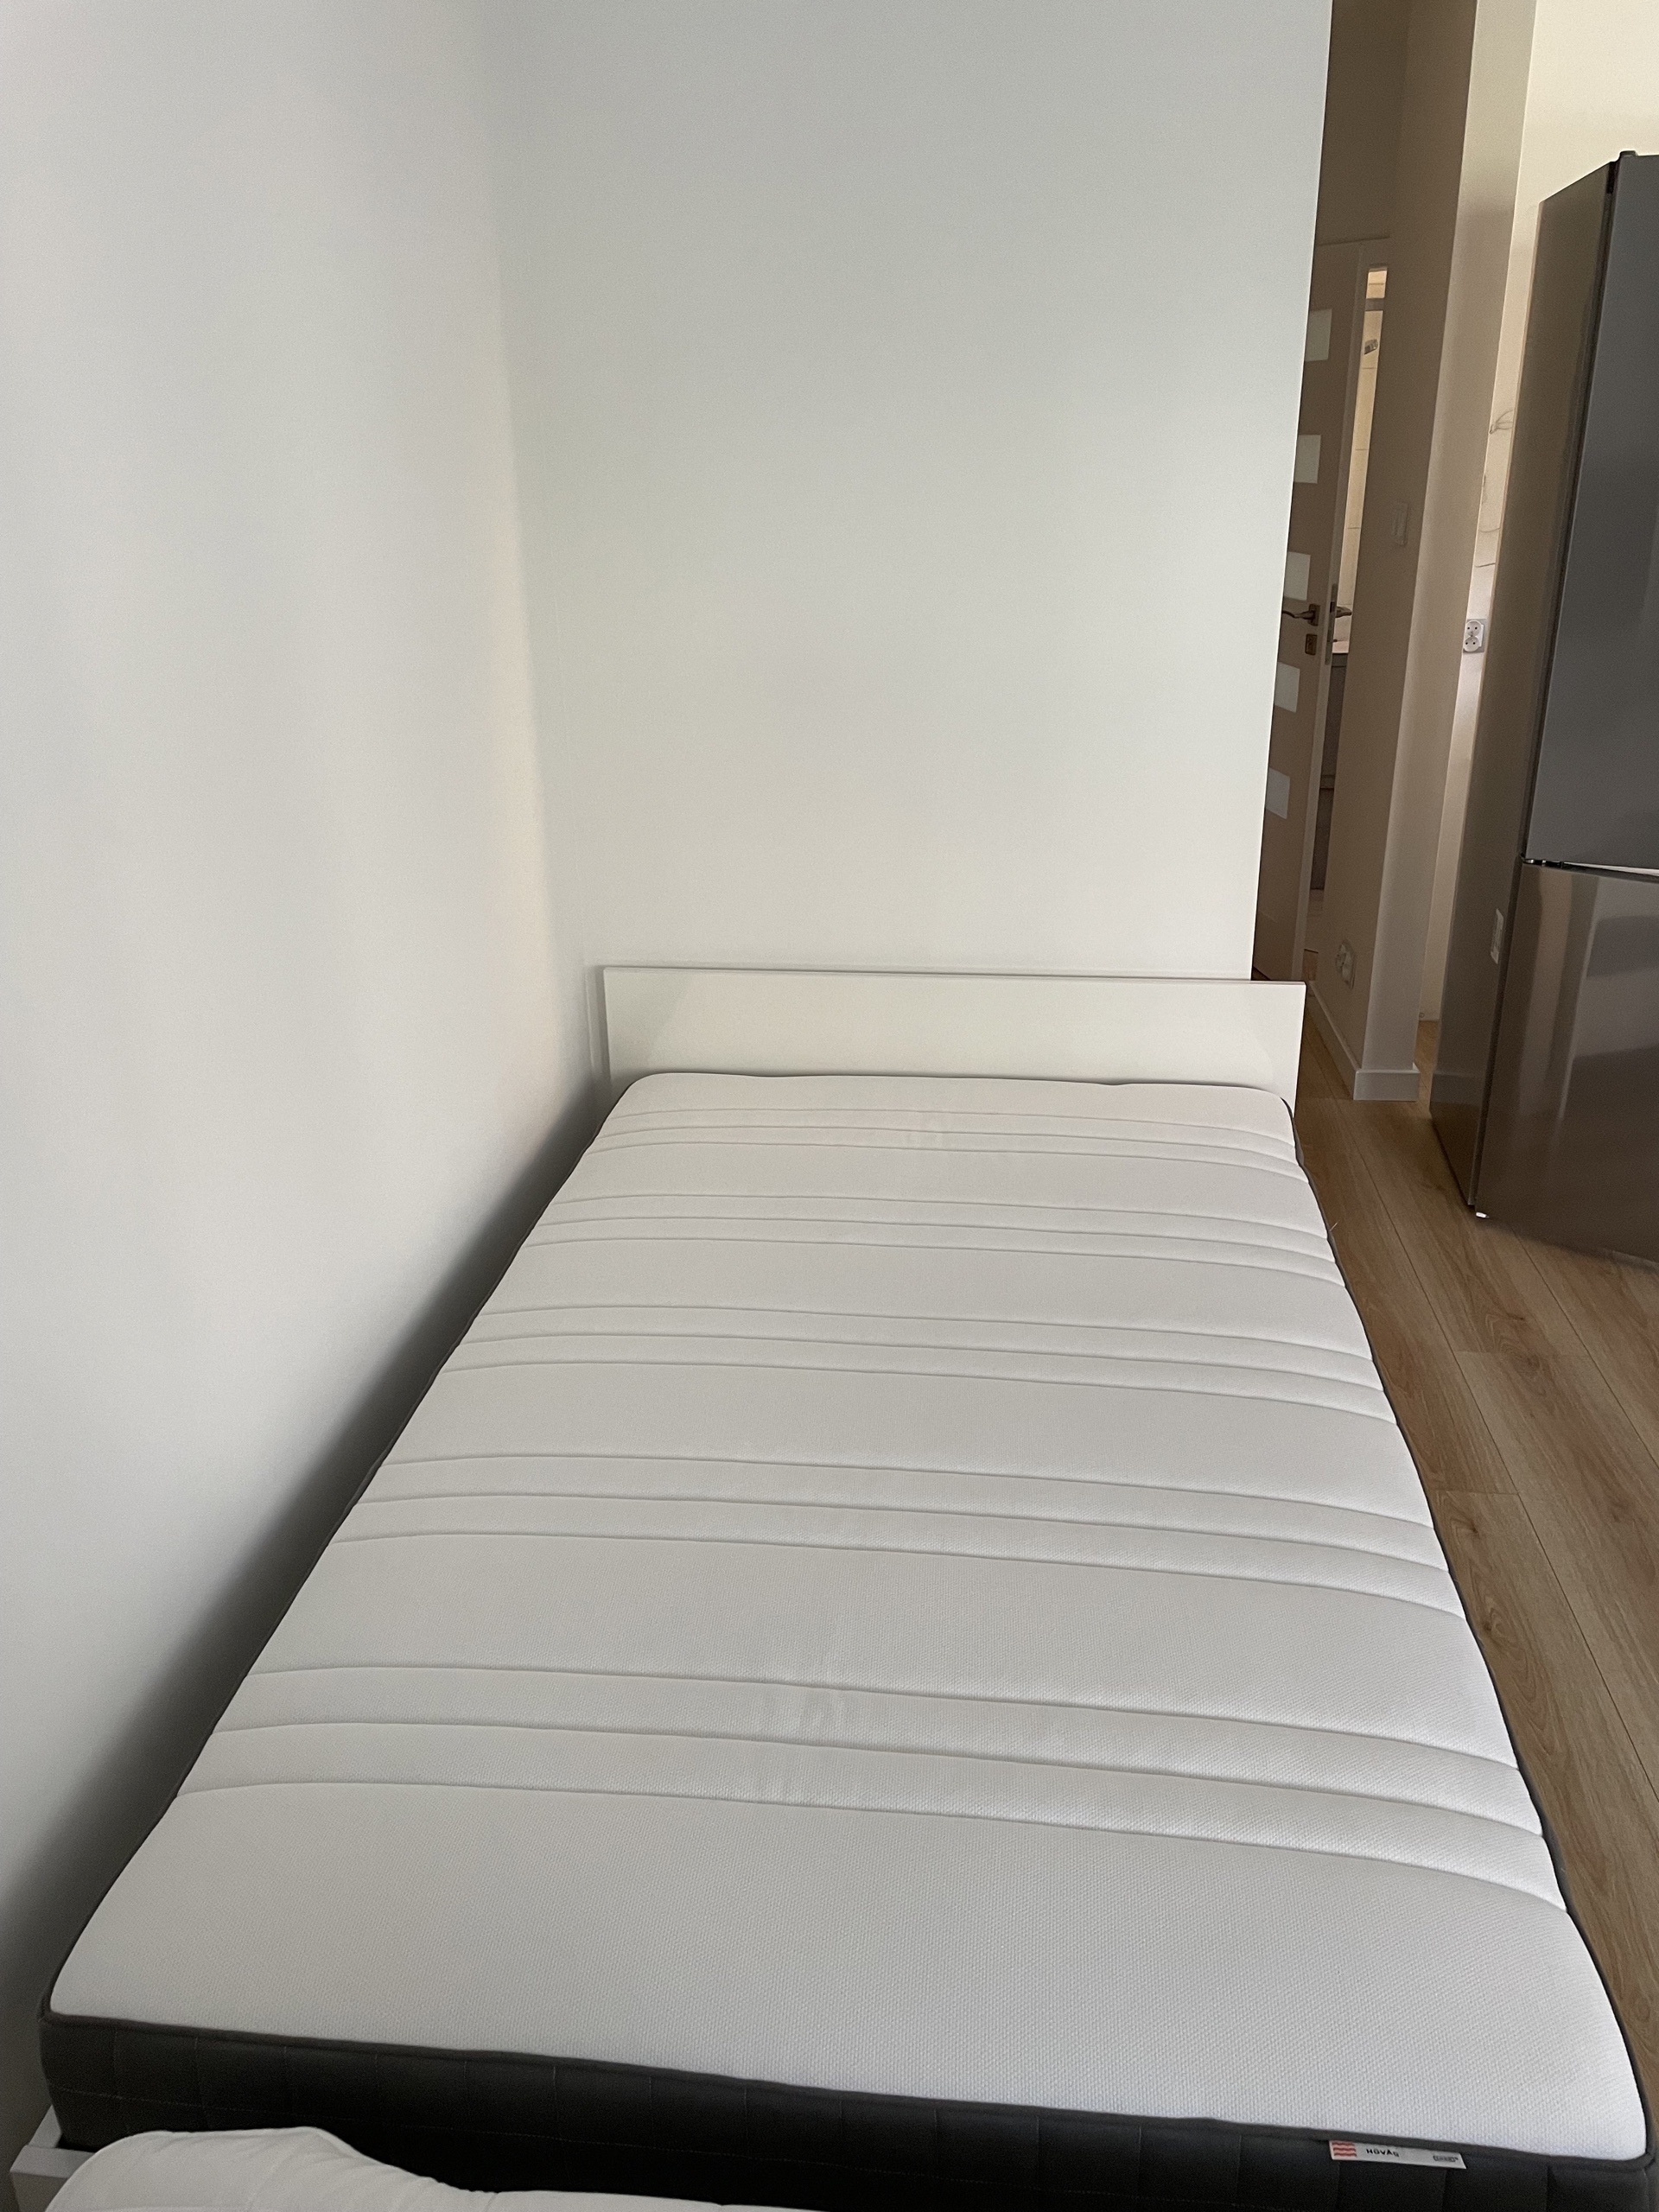 Łóżko pojedyncze Halmar 120x200 z materacem IKEA | Wrocław | Kup teraz na  Allegro Lokalnie